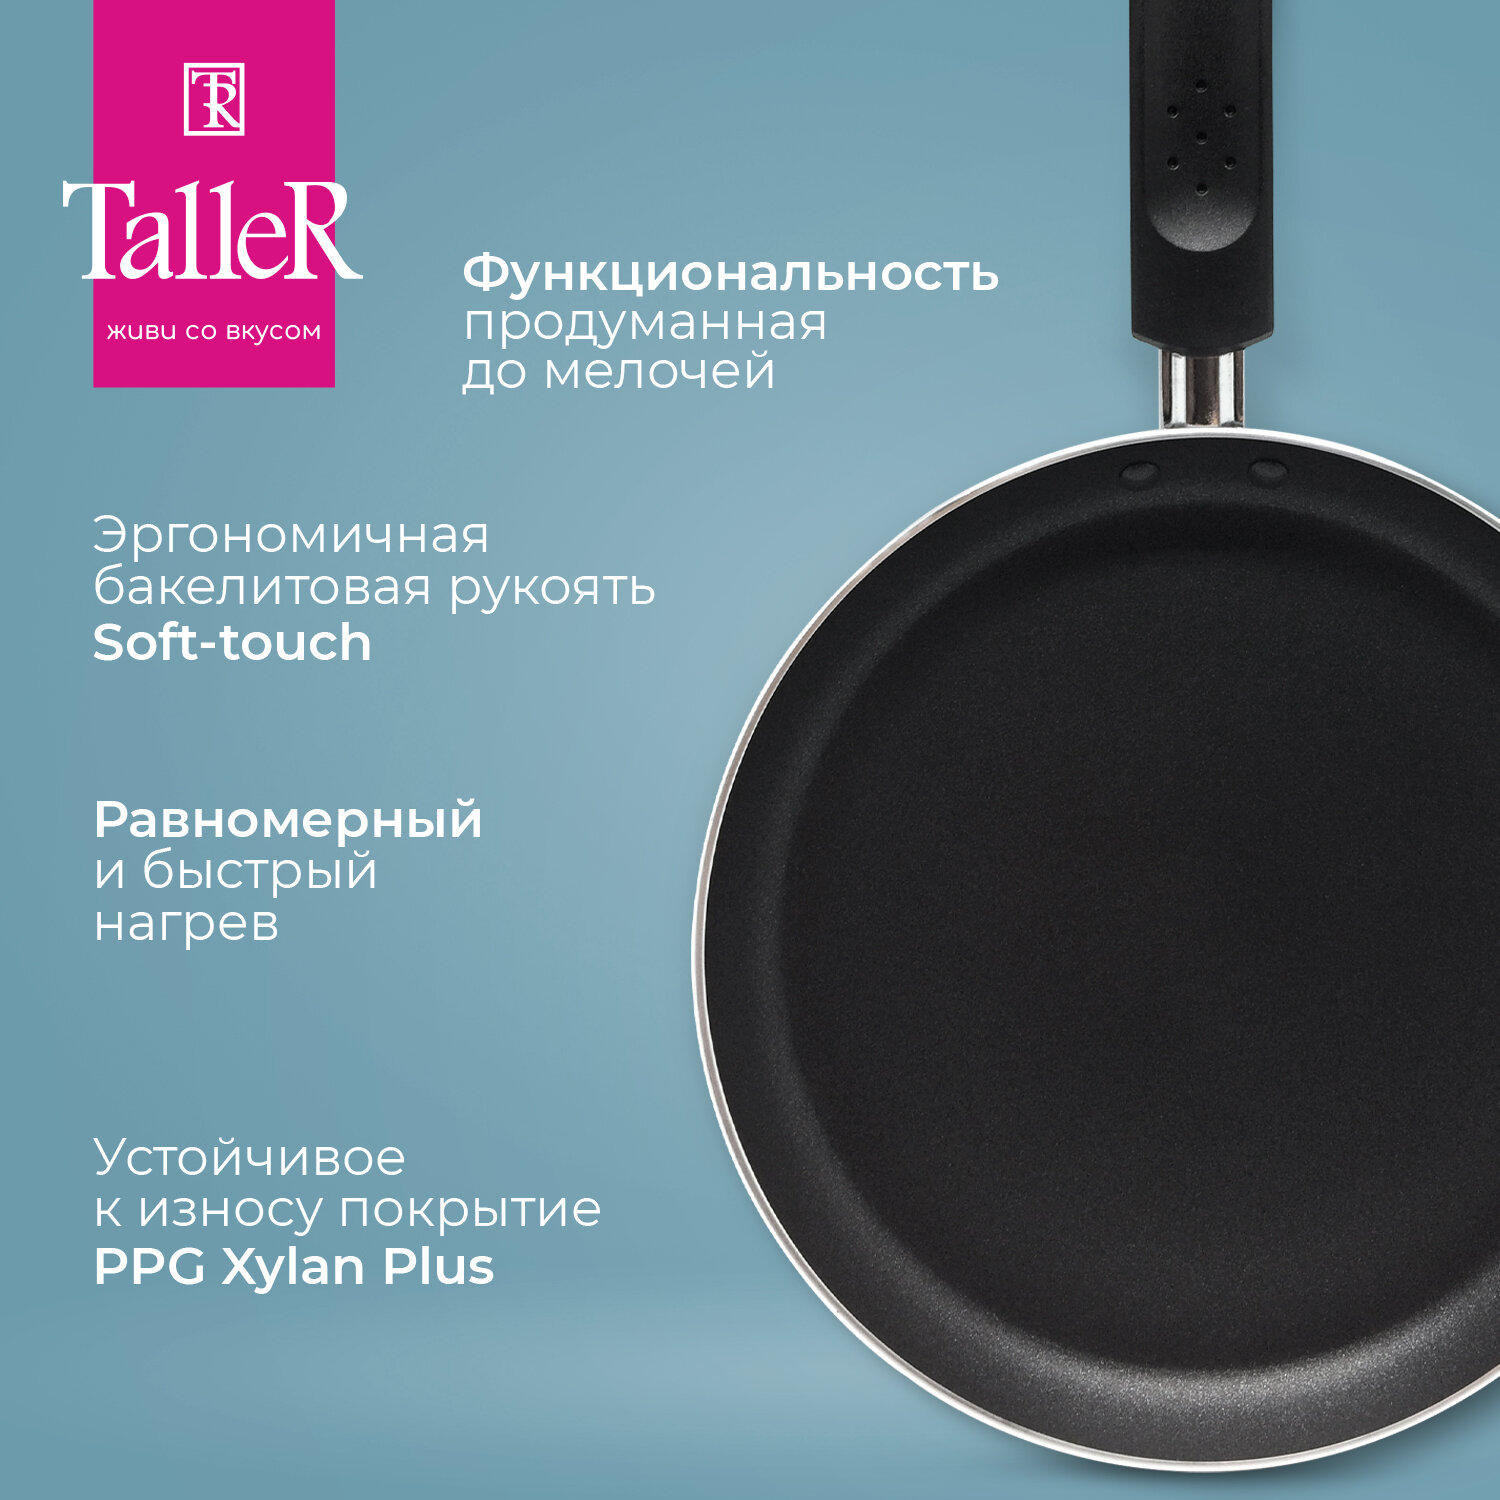 Сковорода для блинов TalleR - фото №4